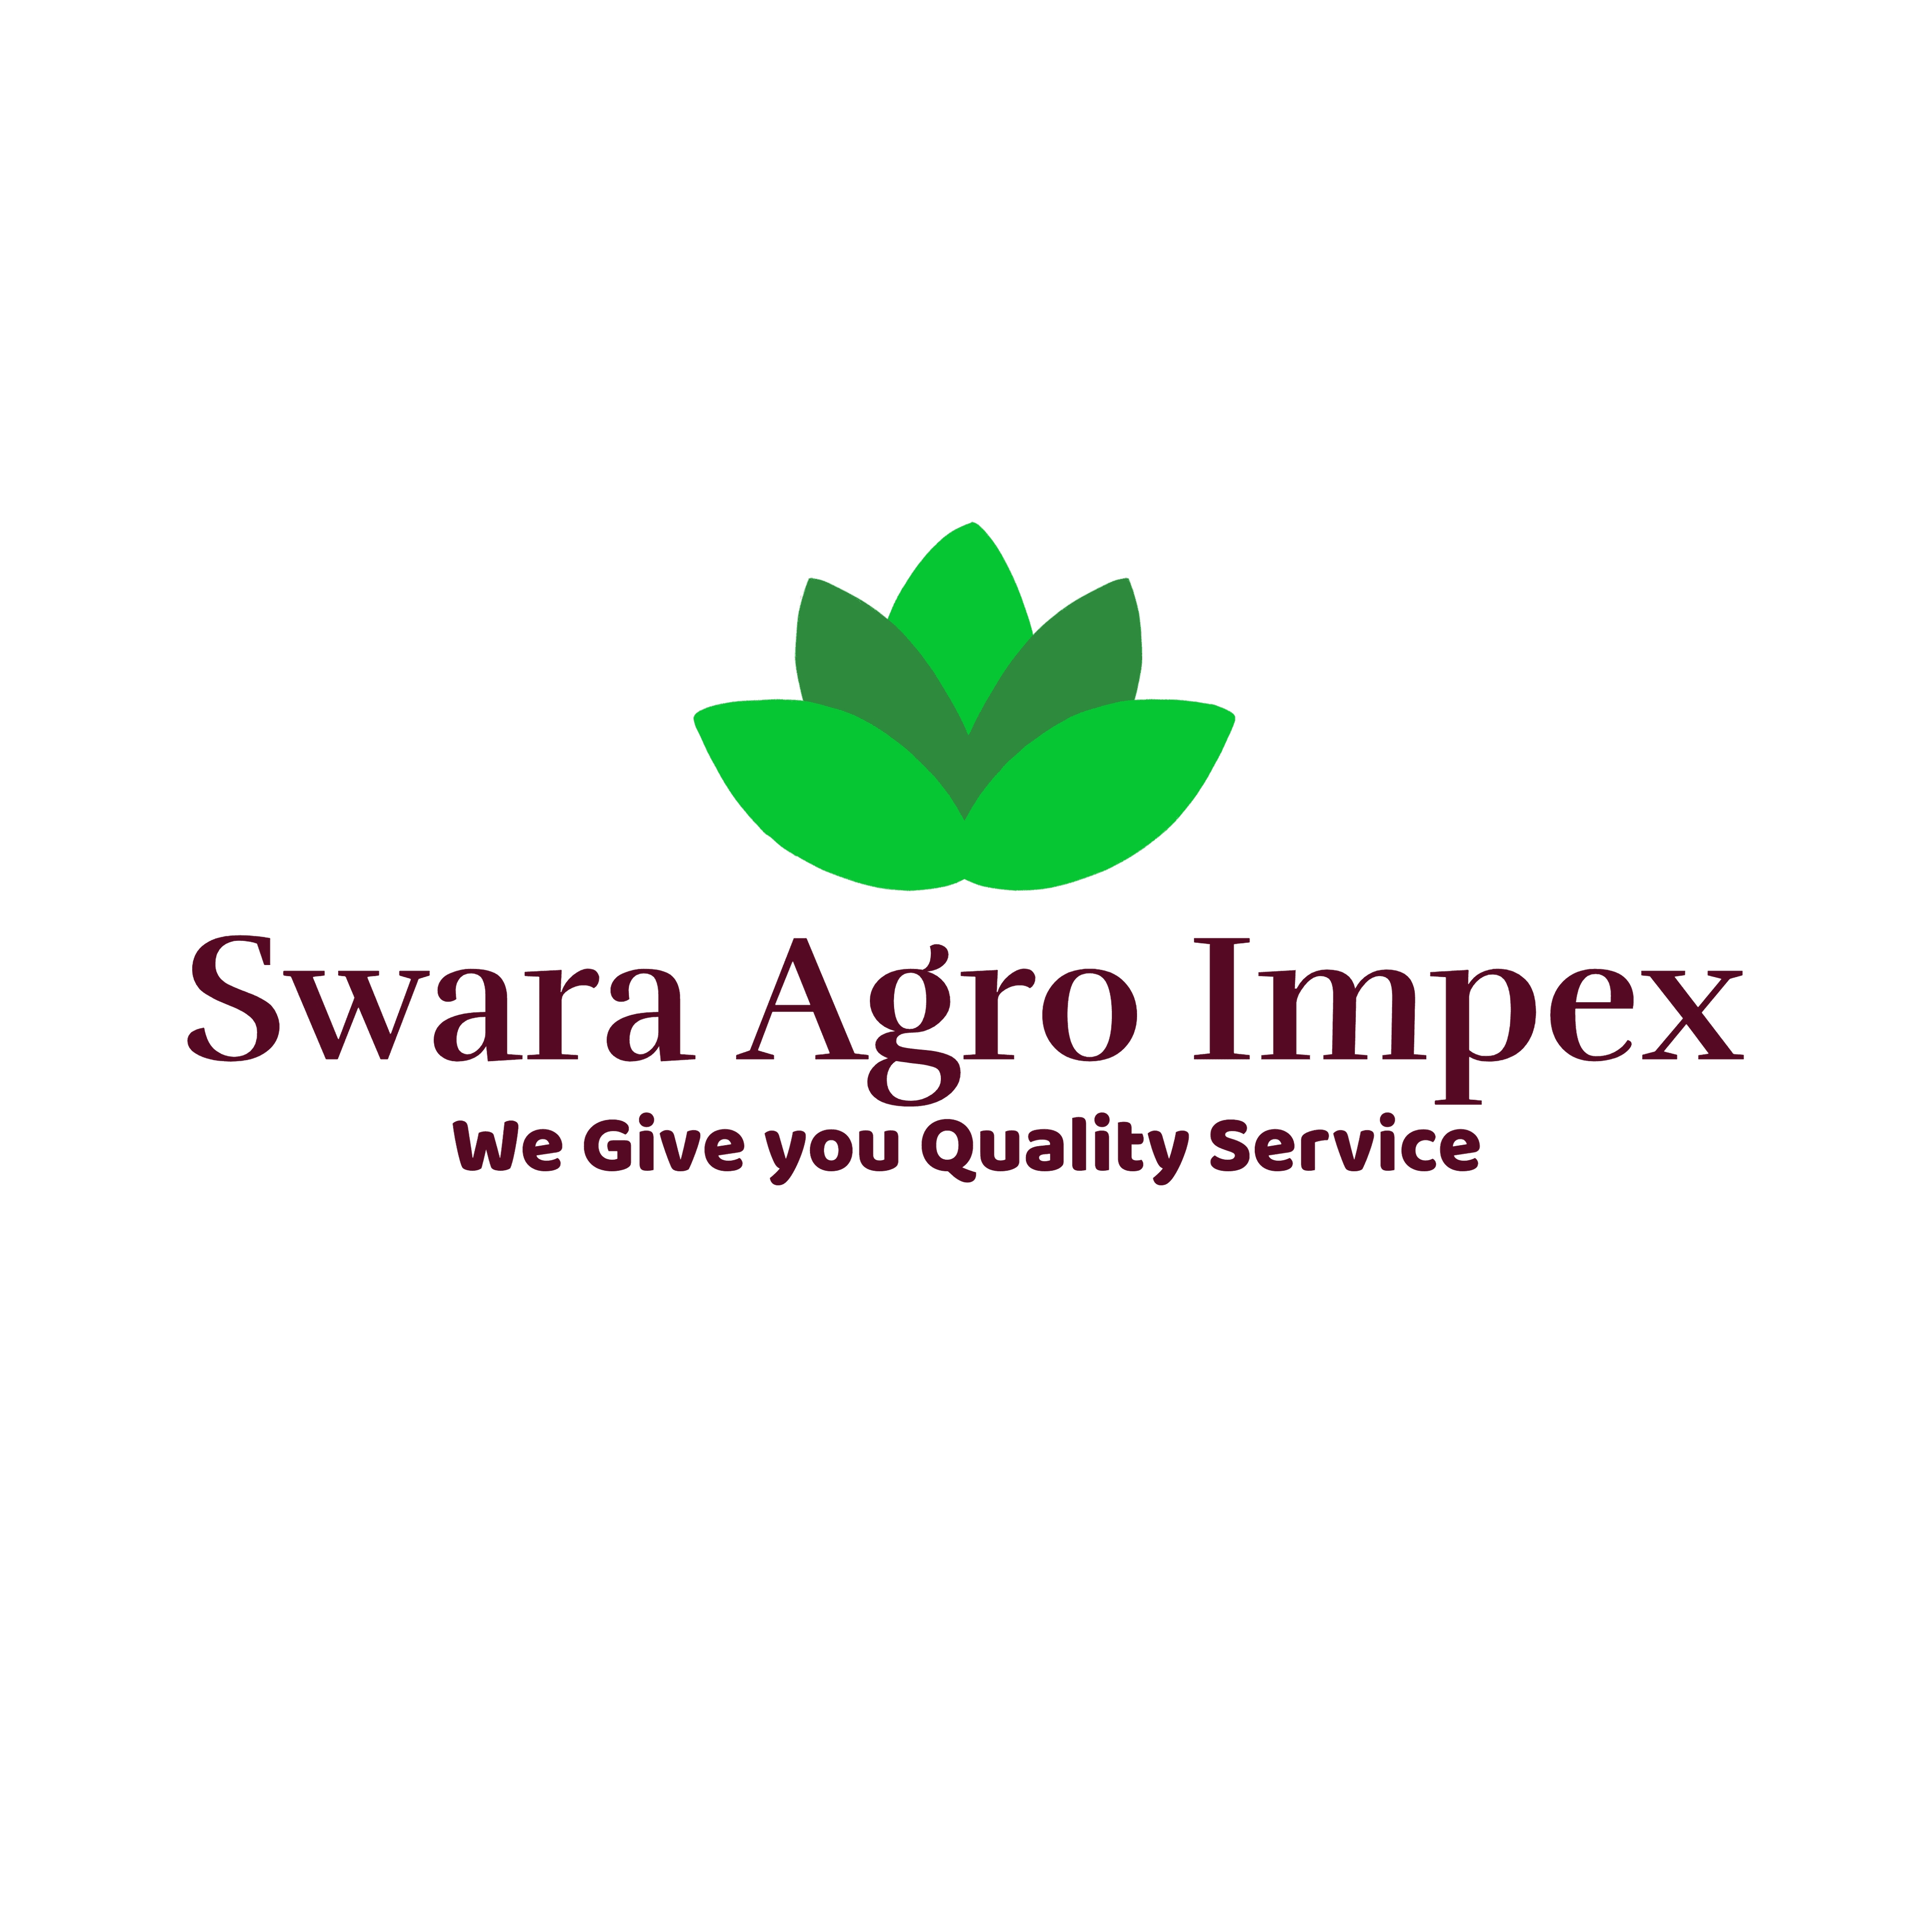 Swara Agro Impex